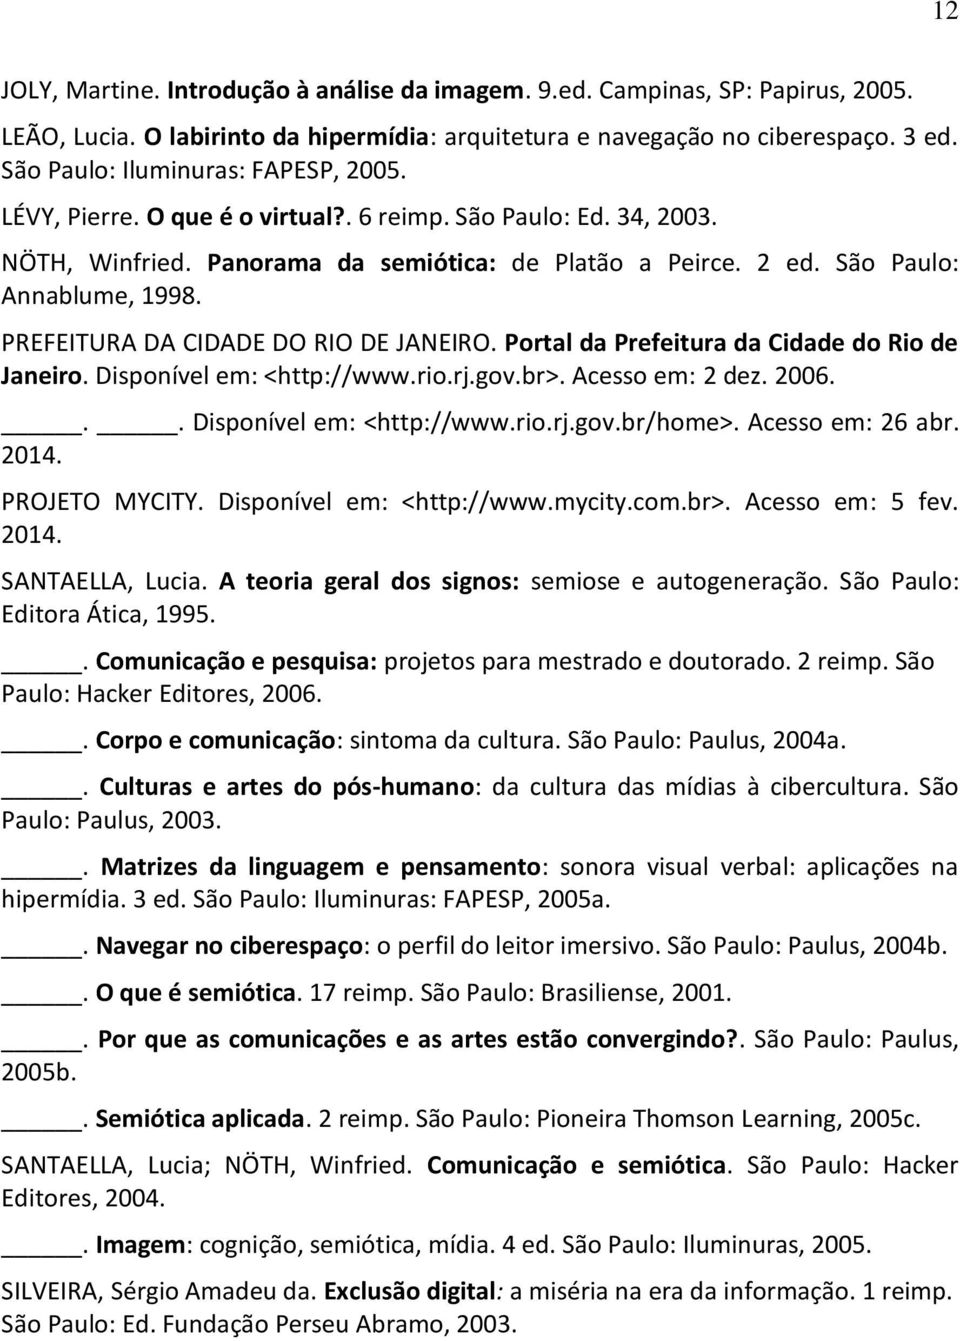 PREFEITURA DA CIDADE DO RIO DE JANEIRO. Portal da Prefeitura da Cidade do Rio de Janeiro. Disponível em: <http://www.rio.rj.gov.br>. Acesso em: 2 dez. 2006... Disponível em: <http://www.rio.rj.gov.br/home>.